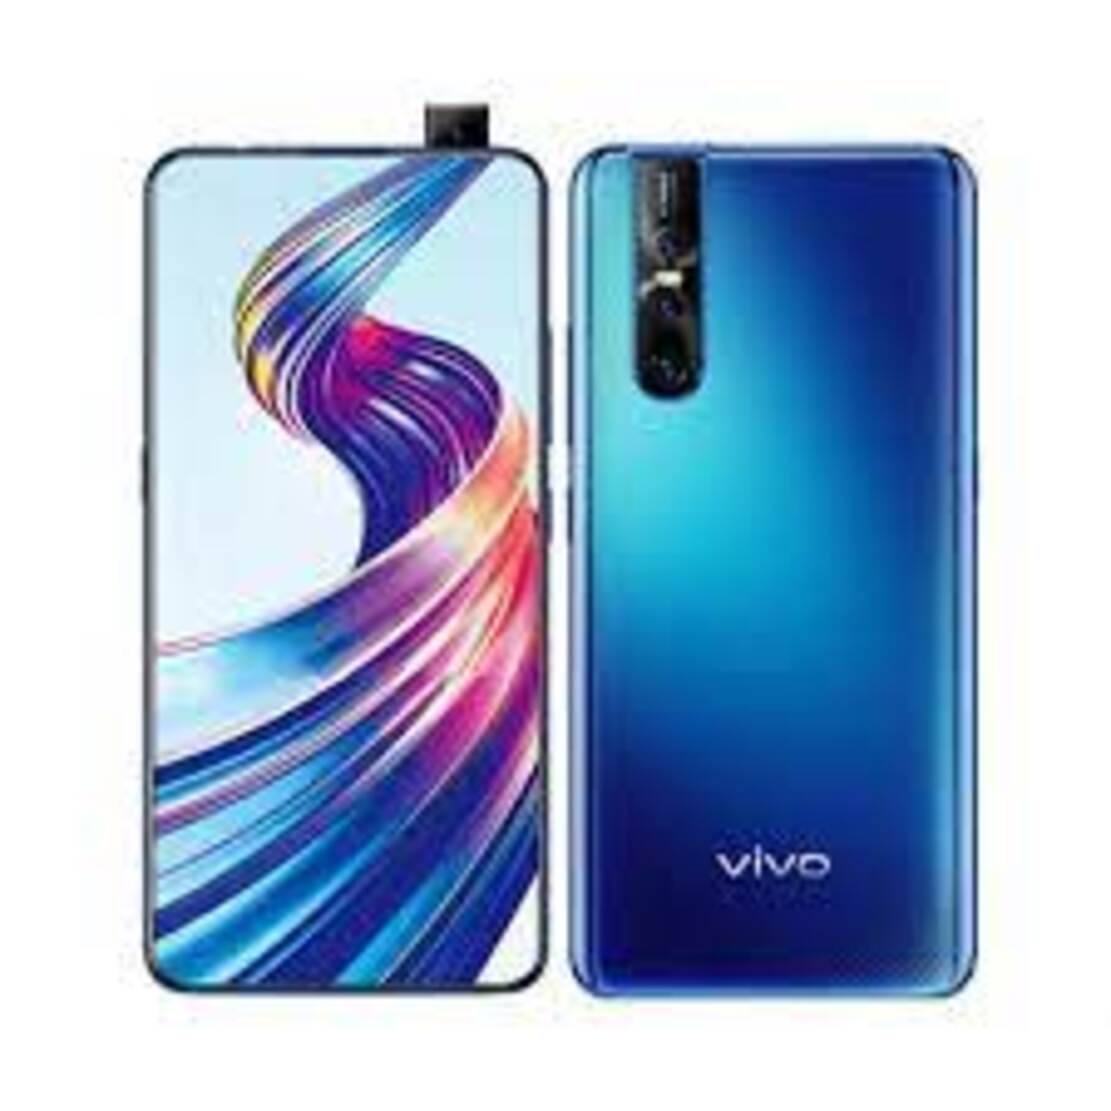 điện thoại Chính Hãng giá siêu rẻ dành cho sinh viên Vivo V15 Pro máy 2sim